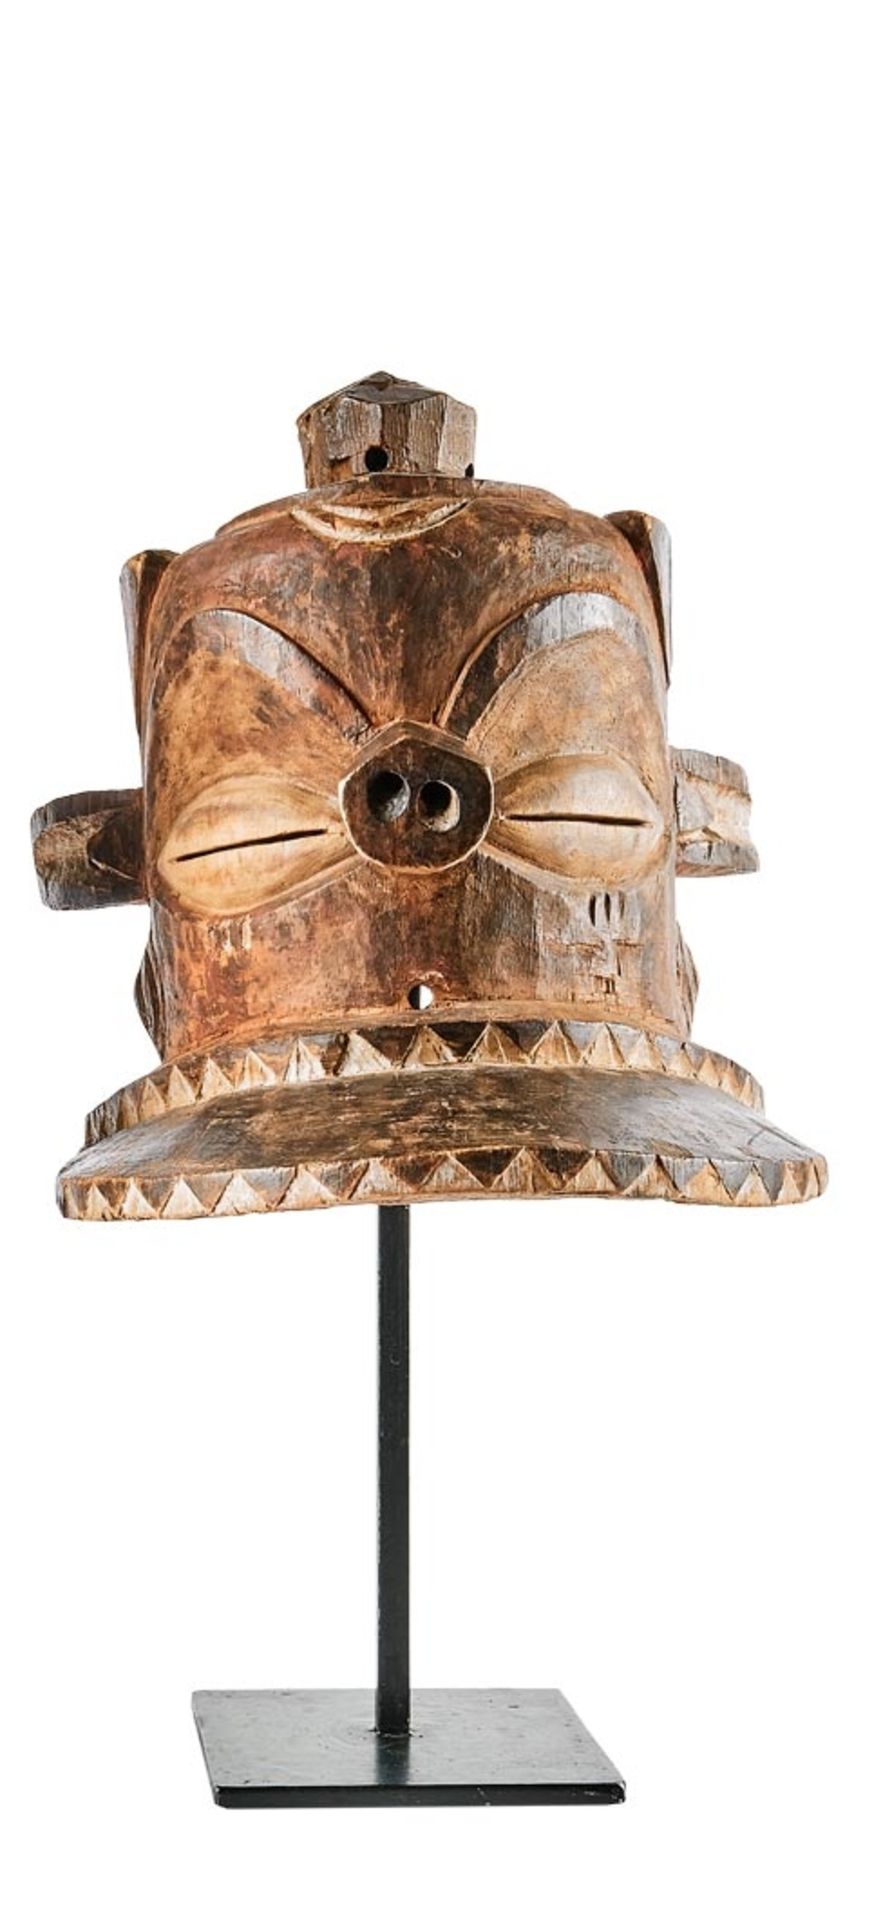 Helm-Maske (Giphogo oder Kipoko) der Ost-Pende